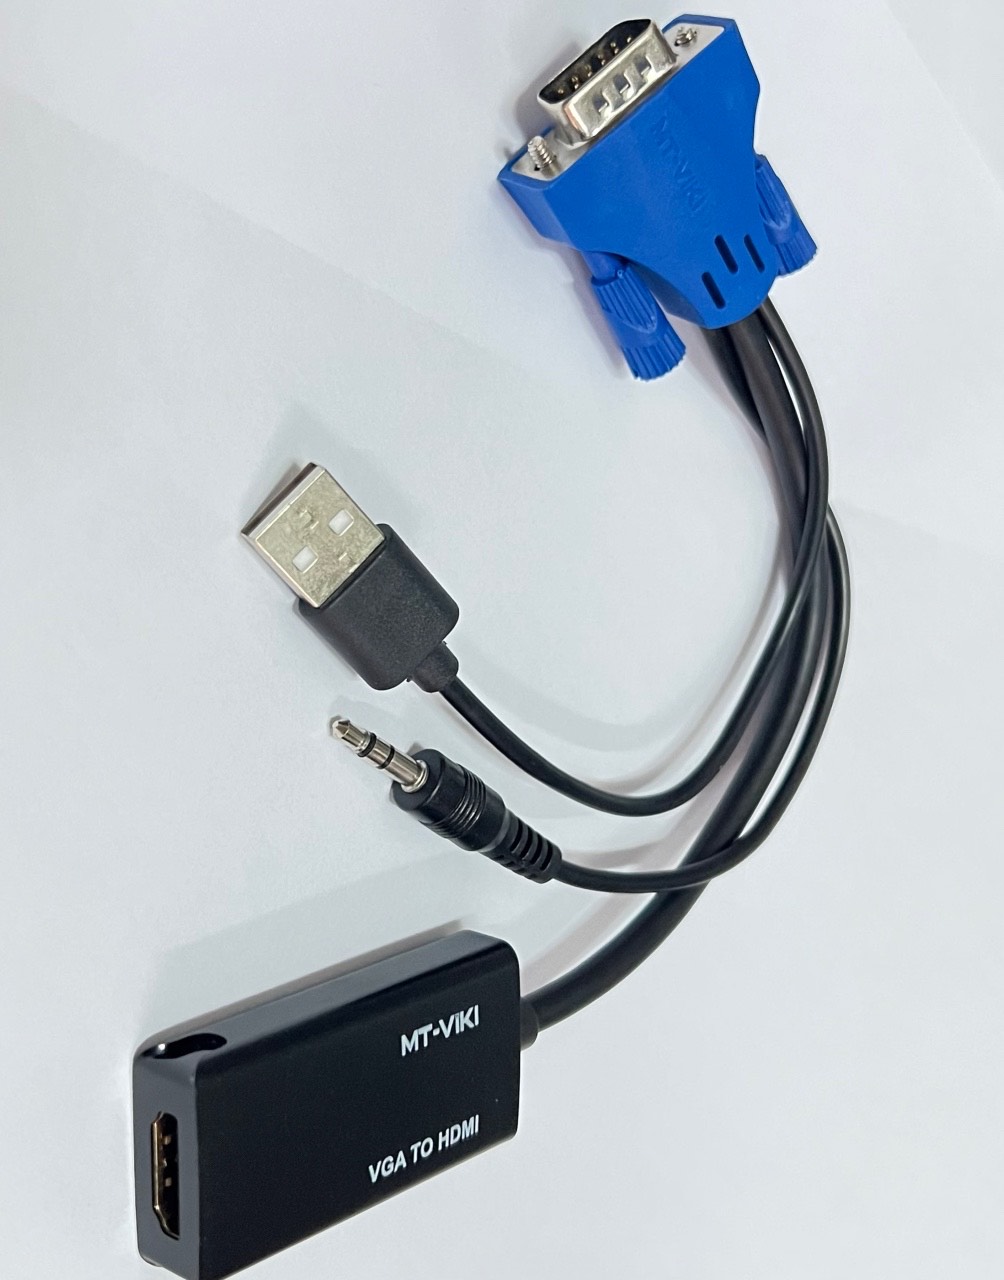 Cáp chuyển đổi VGA sang HDMI MT-VIKIE có Audio, nguồn USB